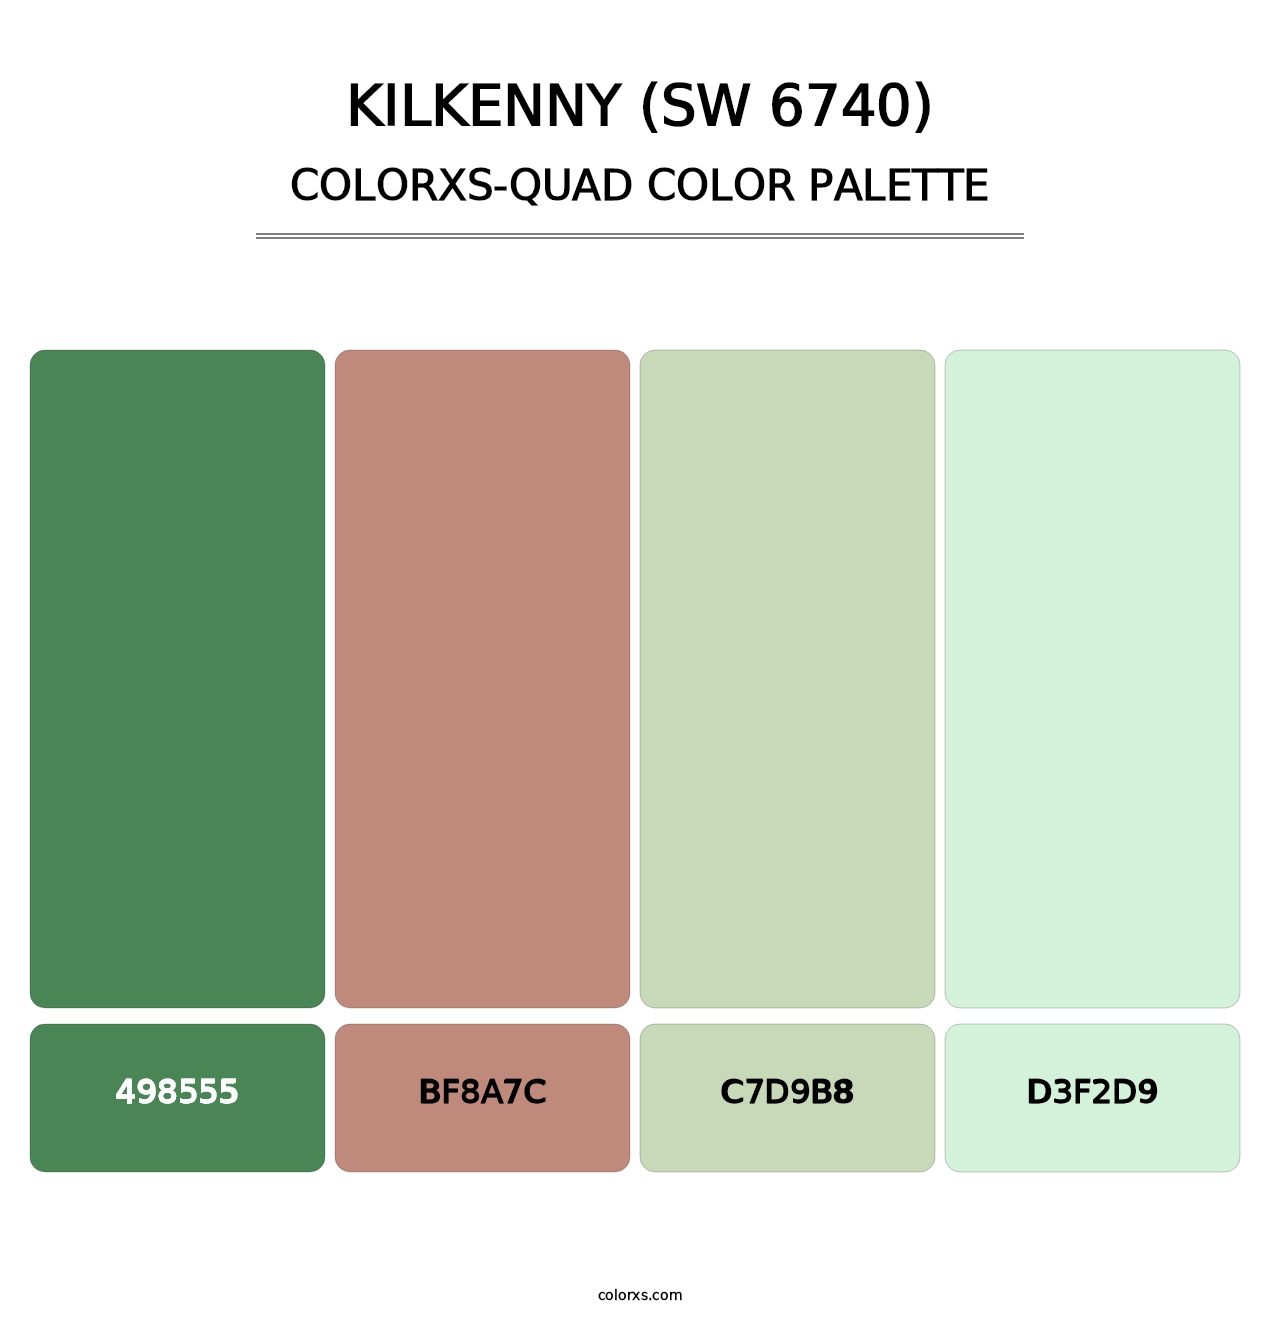 Kilkenny (SW 6740) - Colorxs Quad Palette